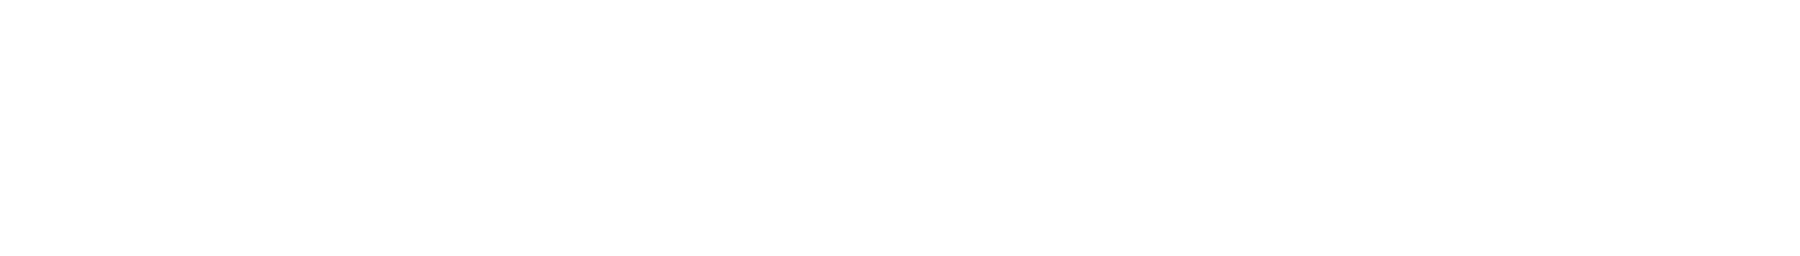 2024.9.14【SAT】 【中部エリア大会】イオンモール豊川▶